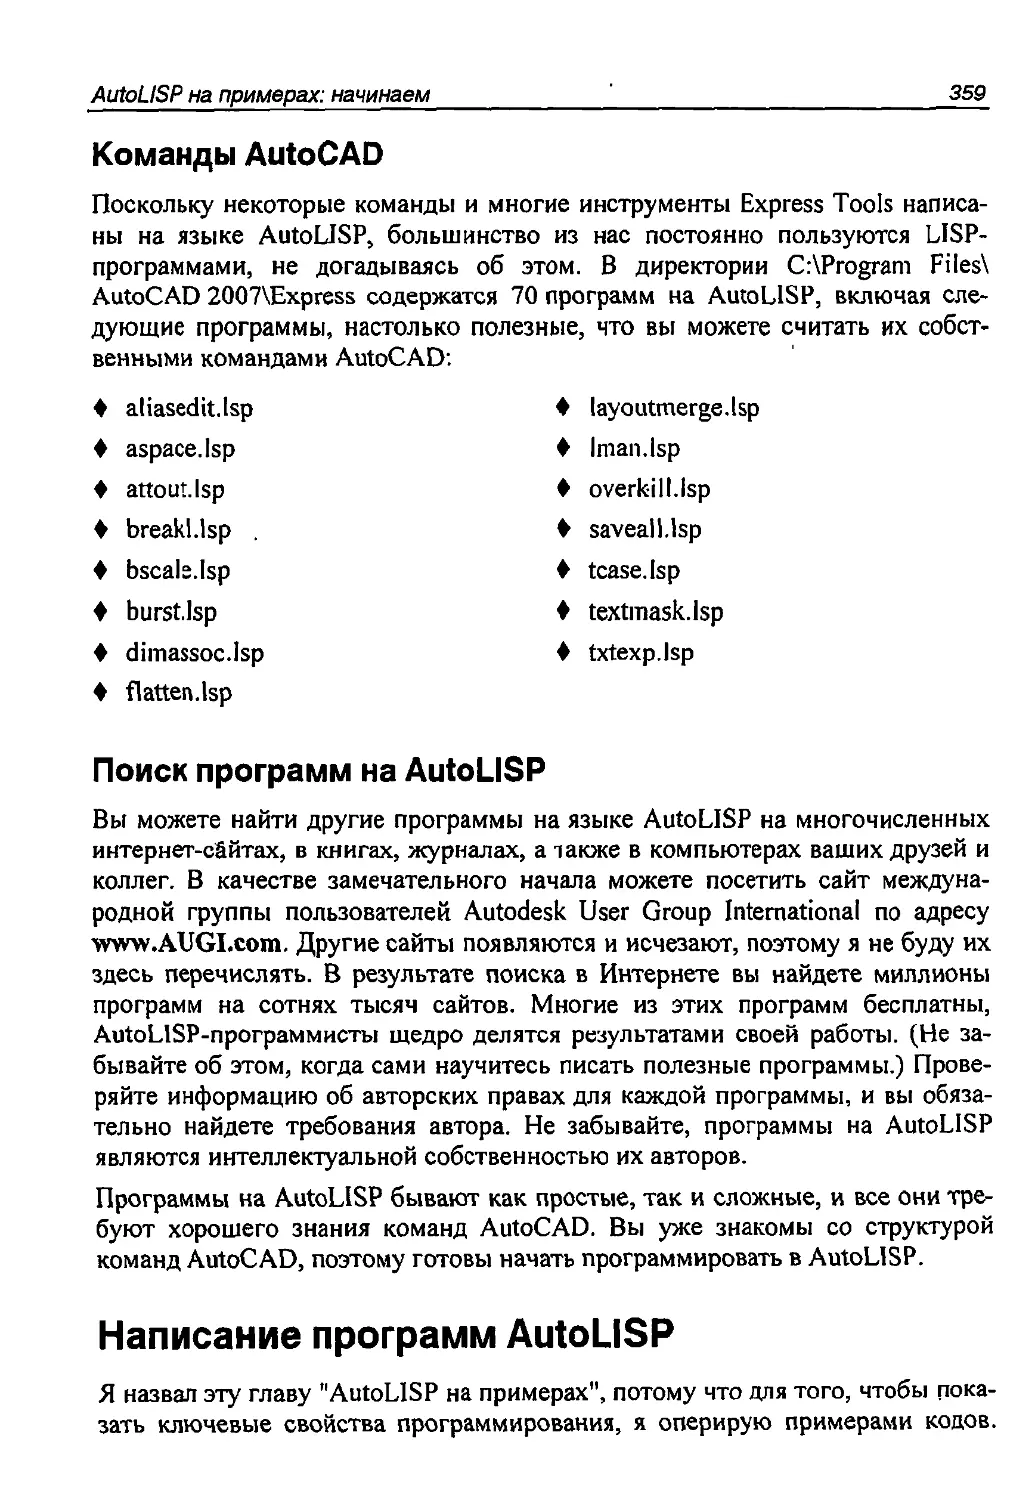 Команды AutoCAD
Поиск программ на AutoLISP
Написание программ AutoLISP